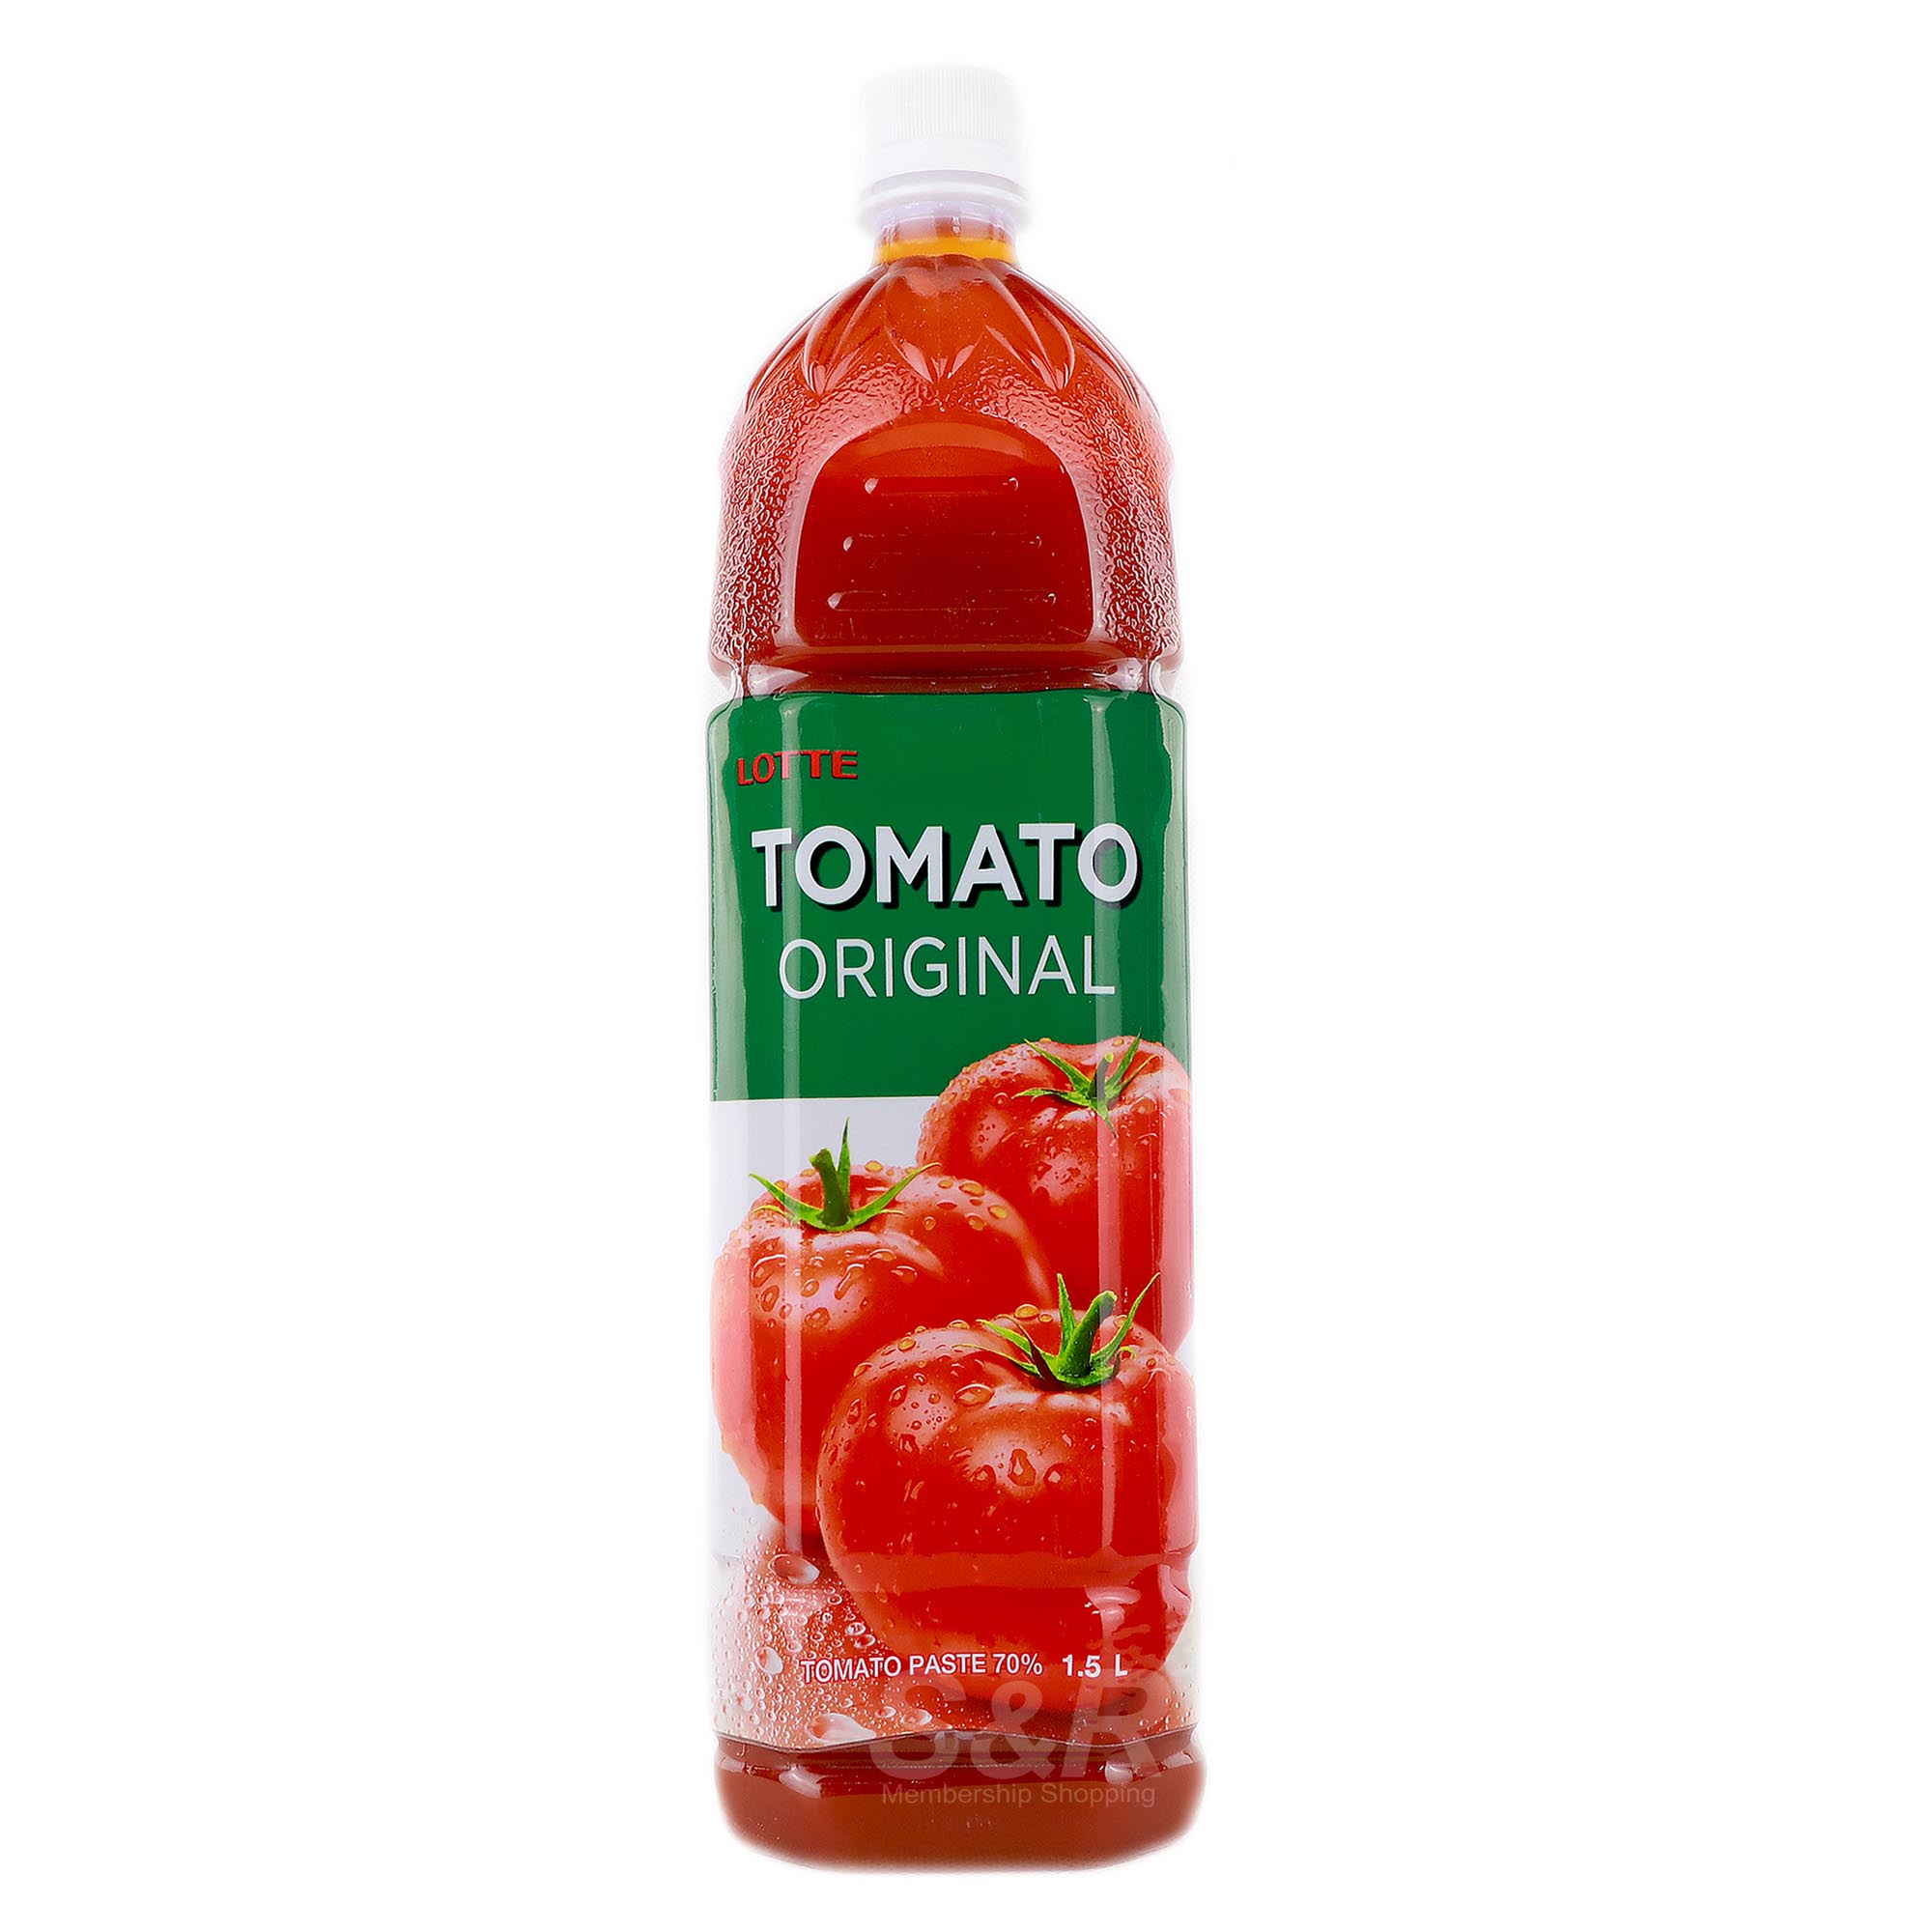 Lotte Tomato Original Juice Drink 1.5L